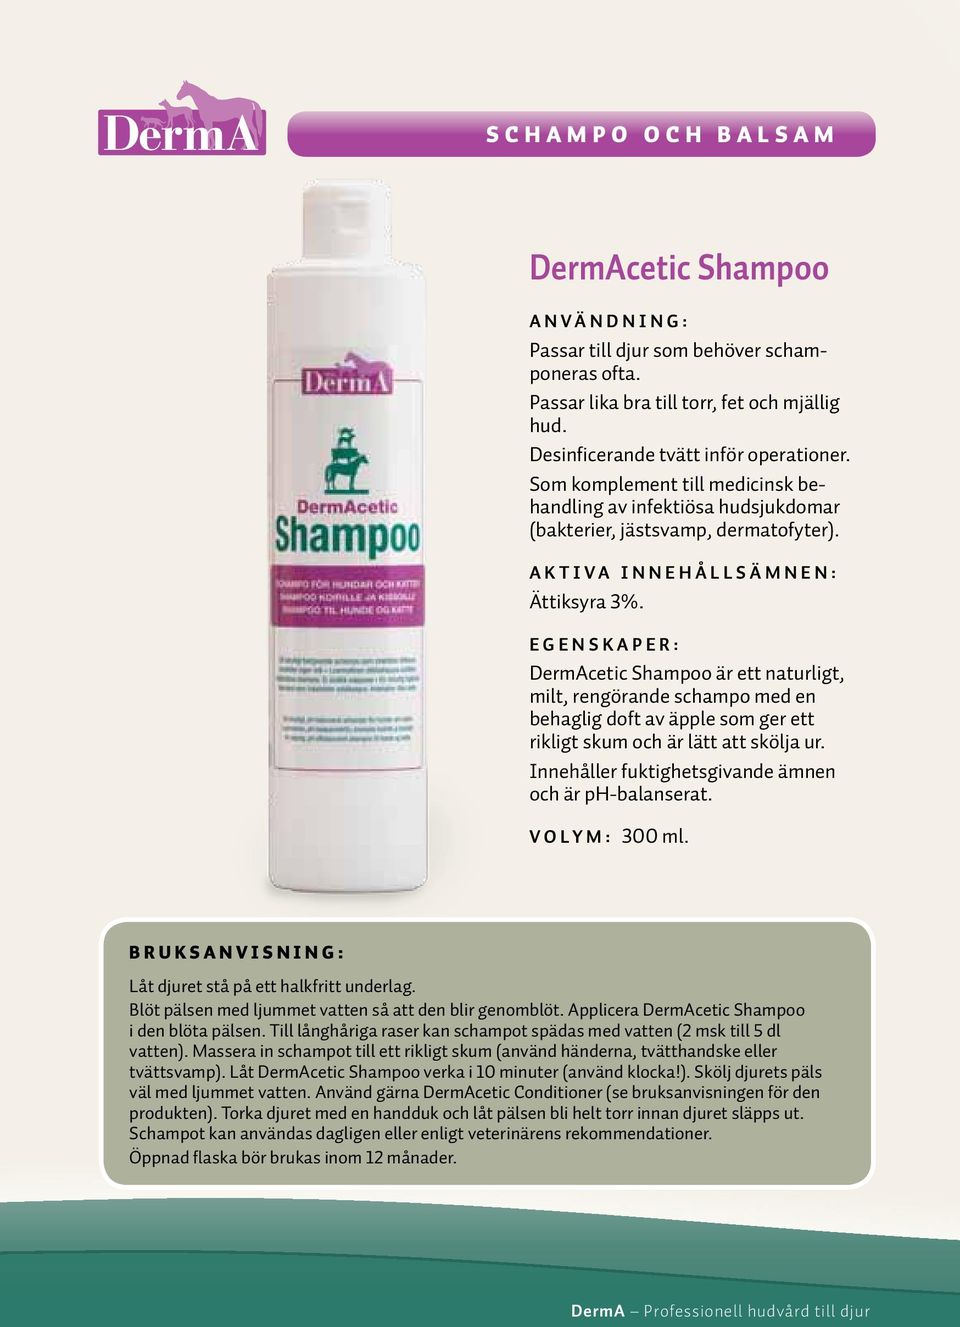 DermAcetic Shampoo är ett naturligt, milt, rengörande schampo med en behaglig doft av äpple som ger ett rikligt skum och är lätt att skölja ur. Innehåller fuktighetsgivande ämnen och är ph-balanserat.